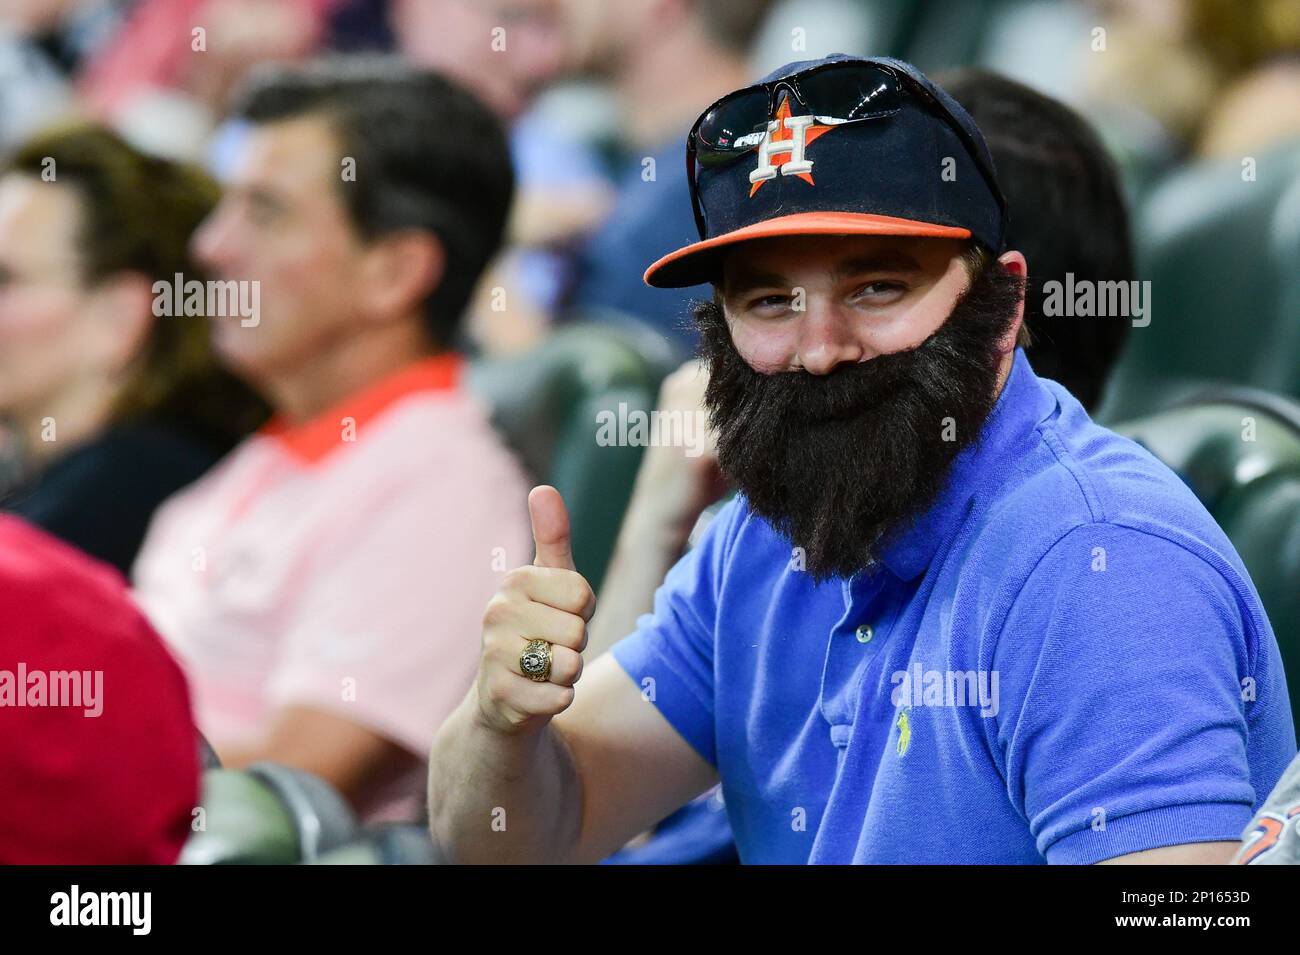 July 10, 2016: A Dallas Keuchel fan wears a fake beard during the